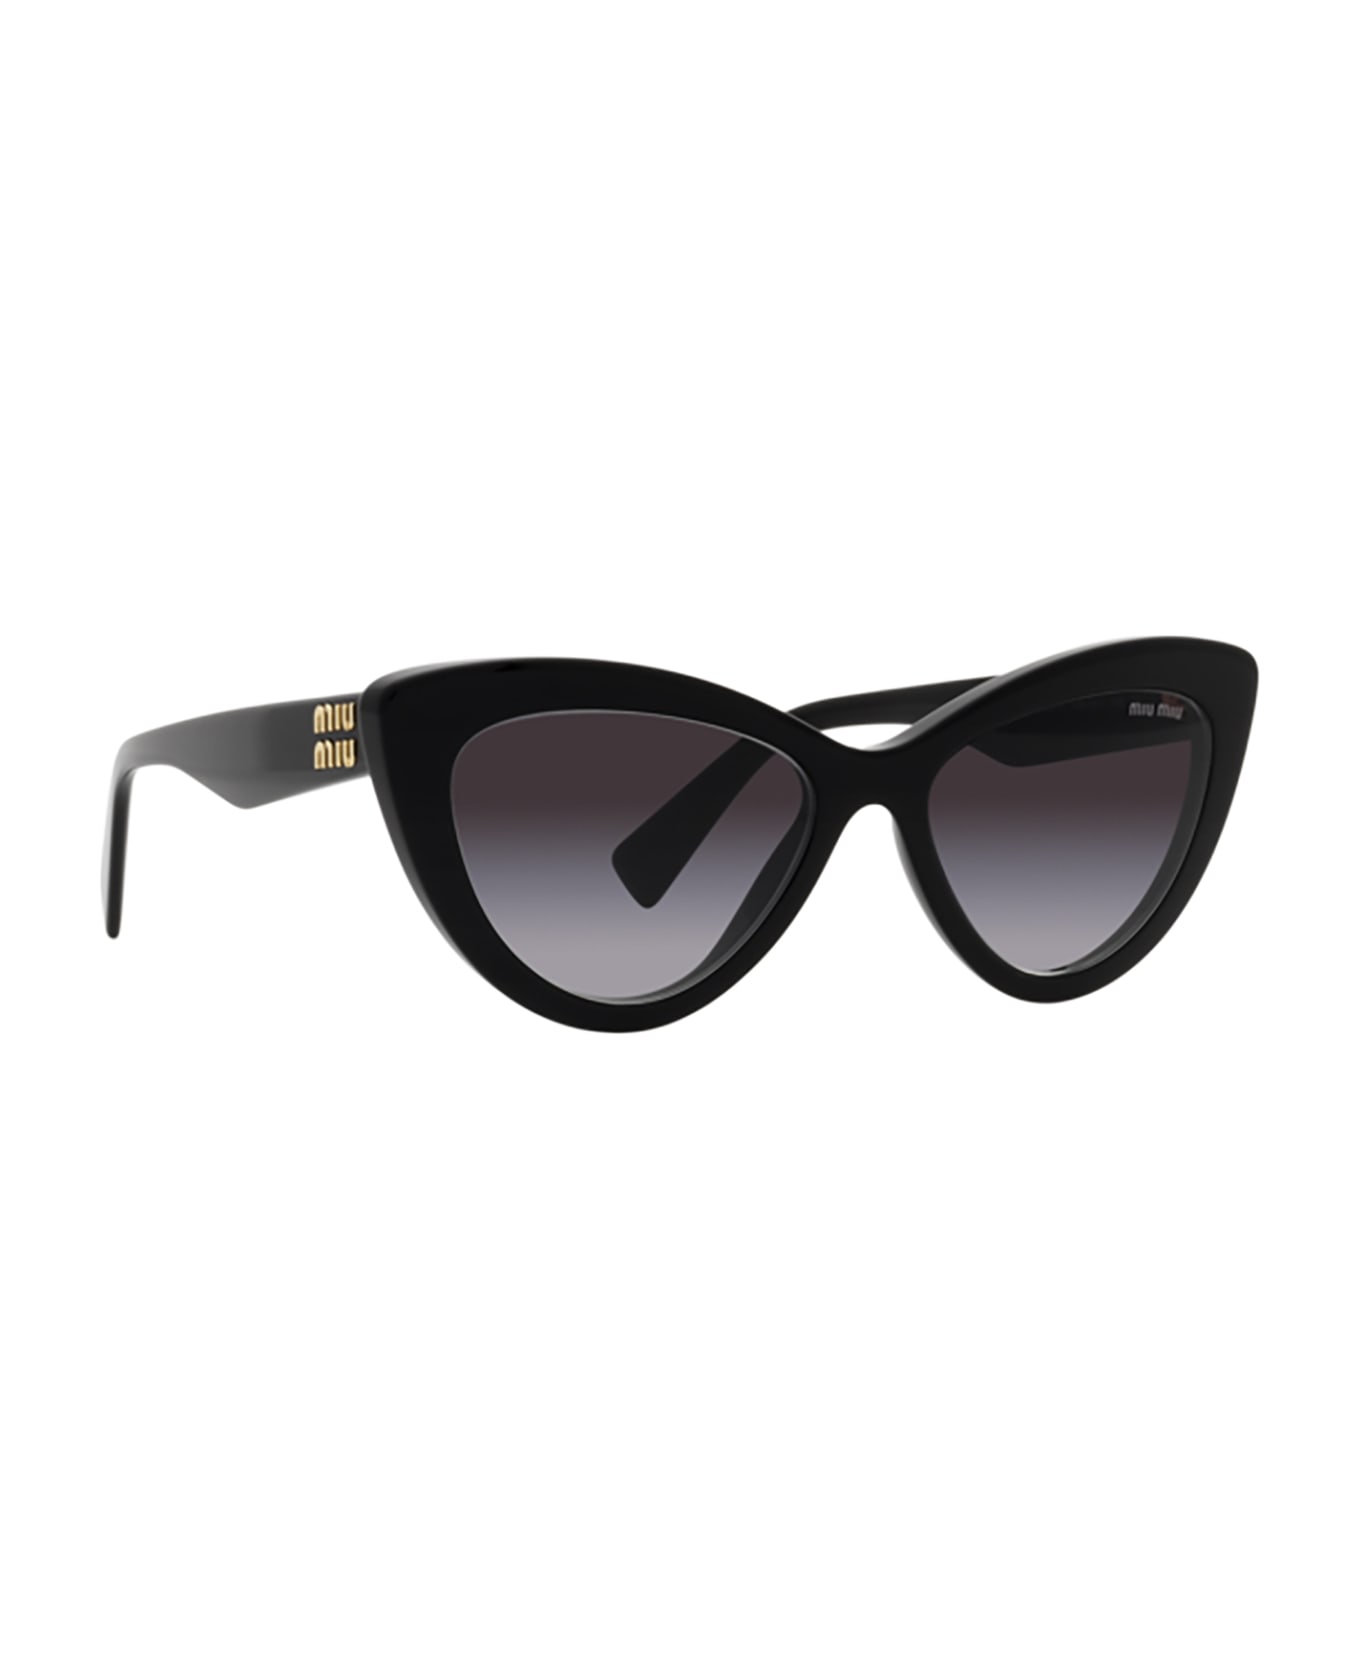 Miu Miu Eyewear Mu 04ys Black Sunglasses - Black サングラス